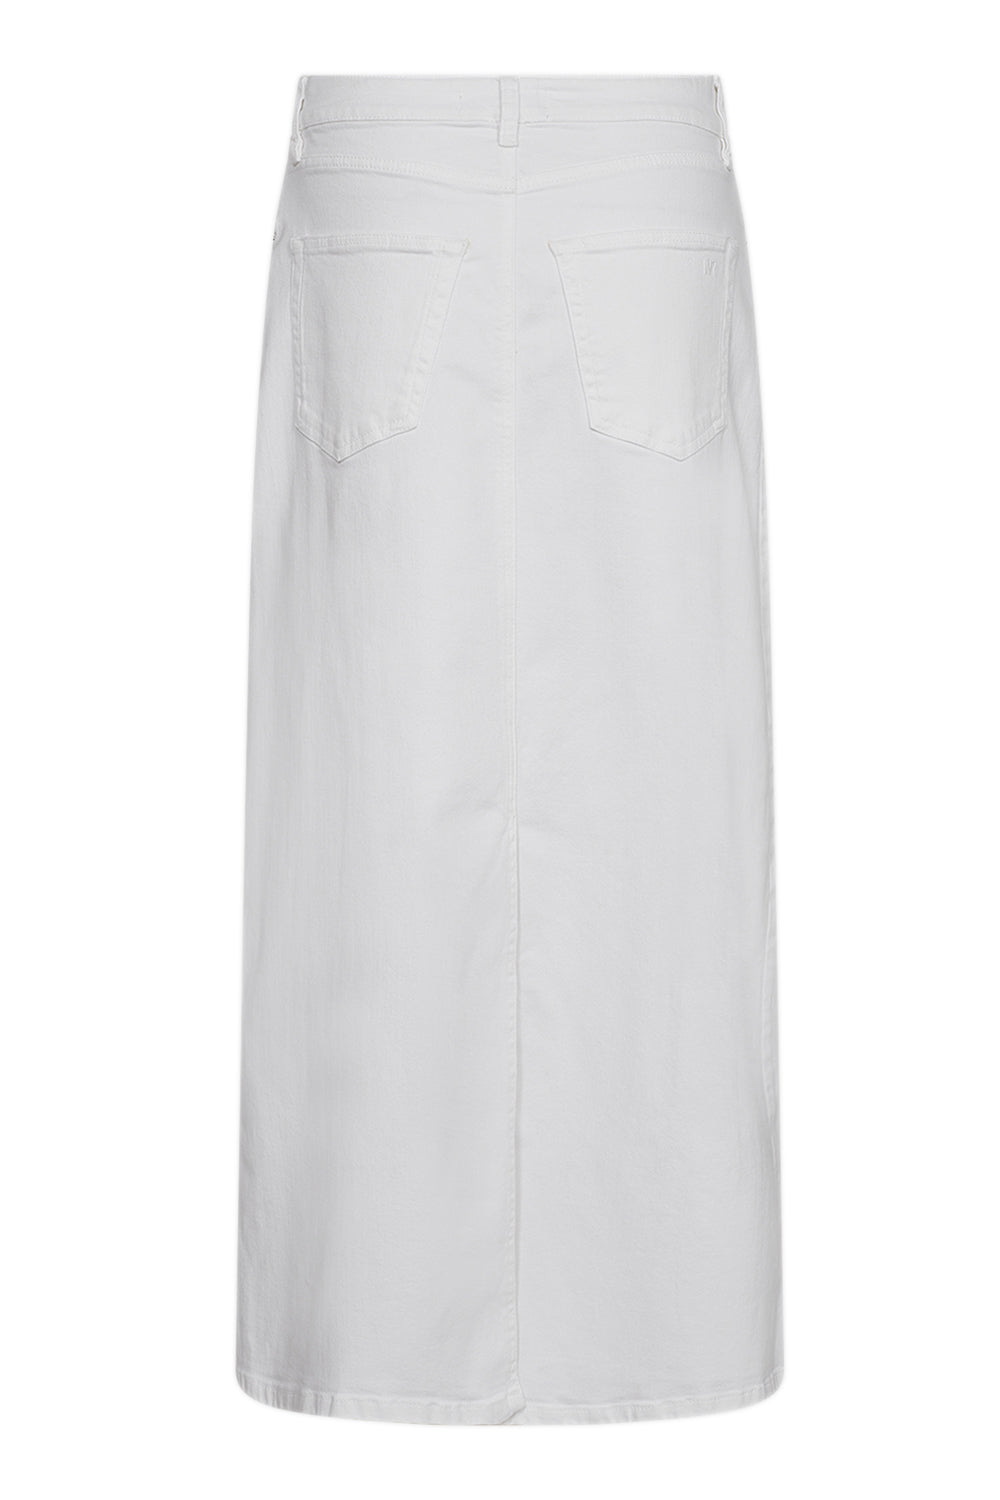 IVY Copenhagen IVY-Zoe Maxi Skirt White Skirt